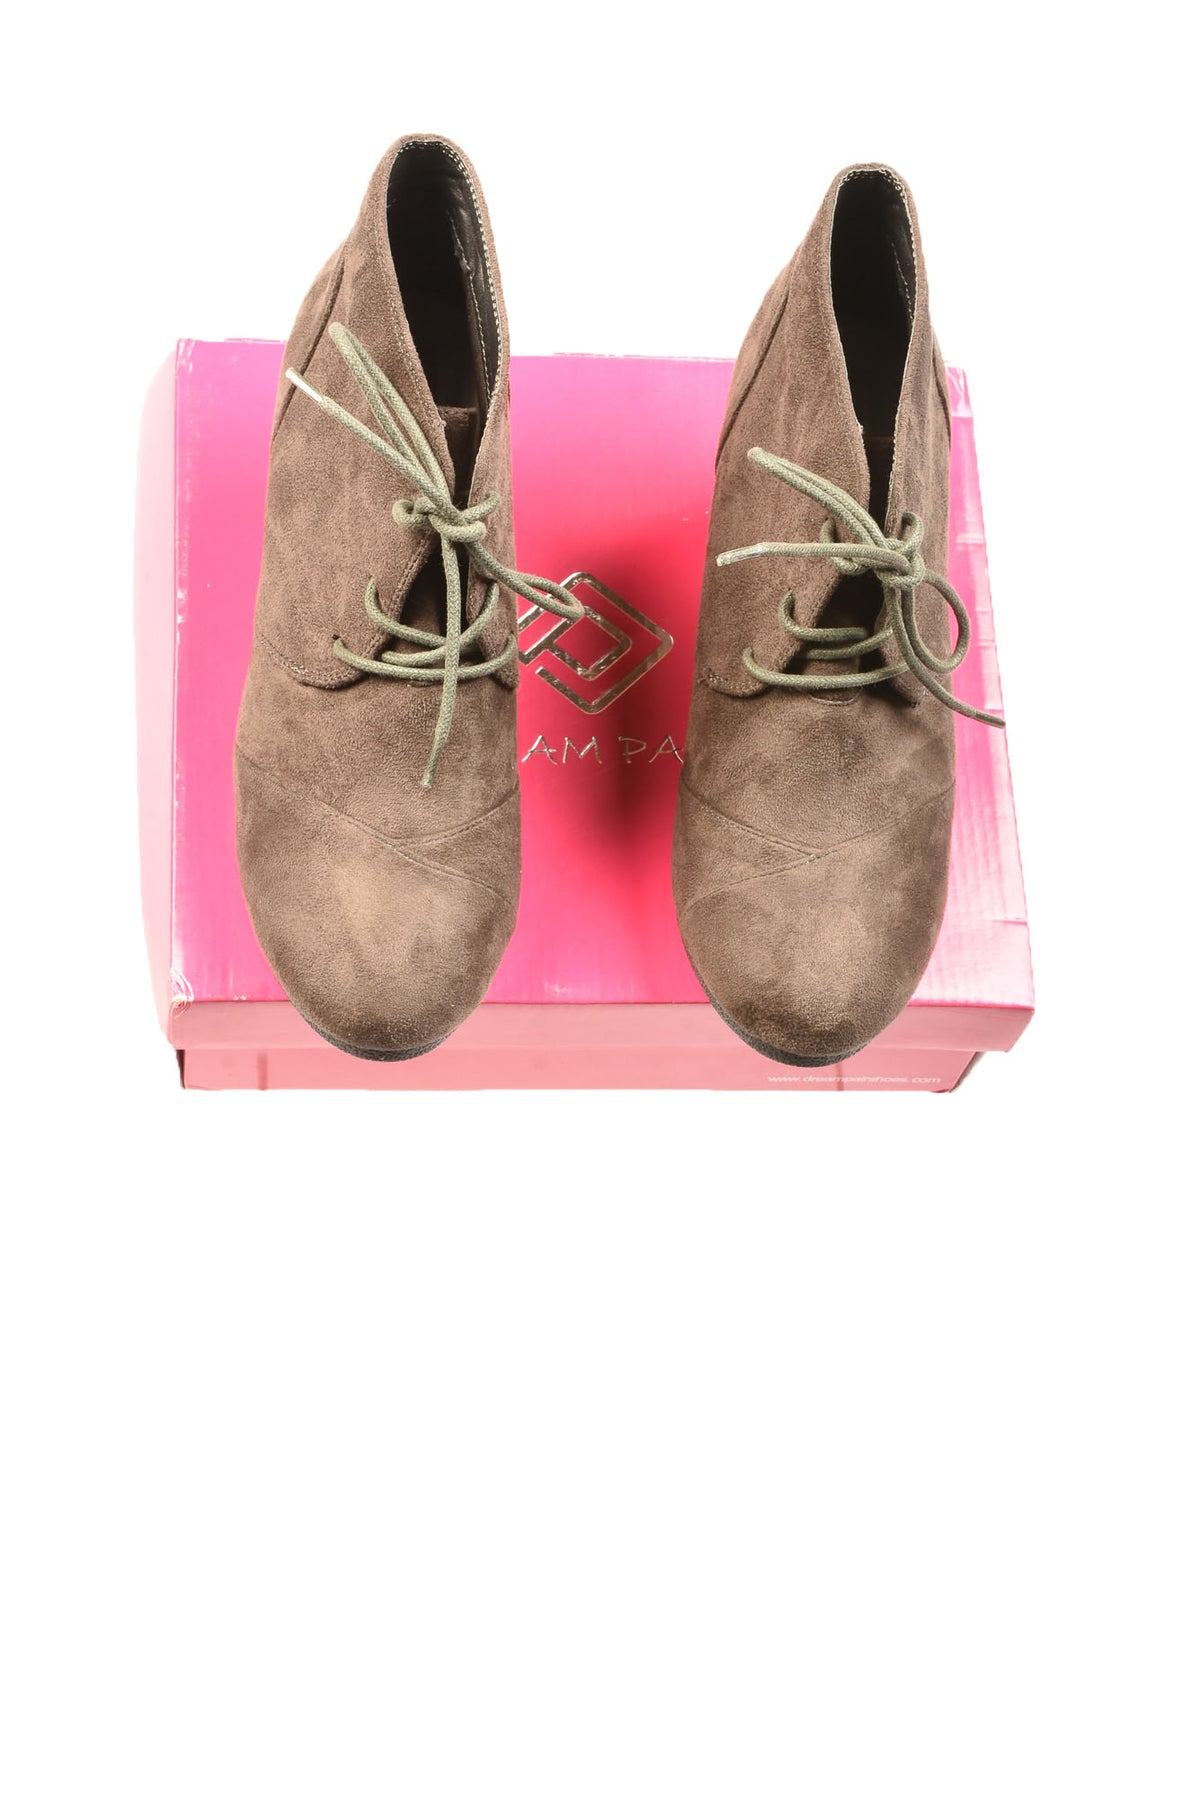 Dream Paris Size 9 Women&#39;s Boots